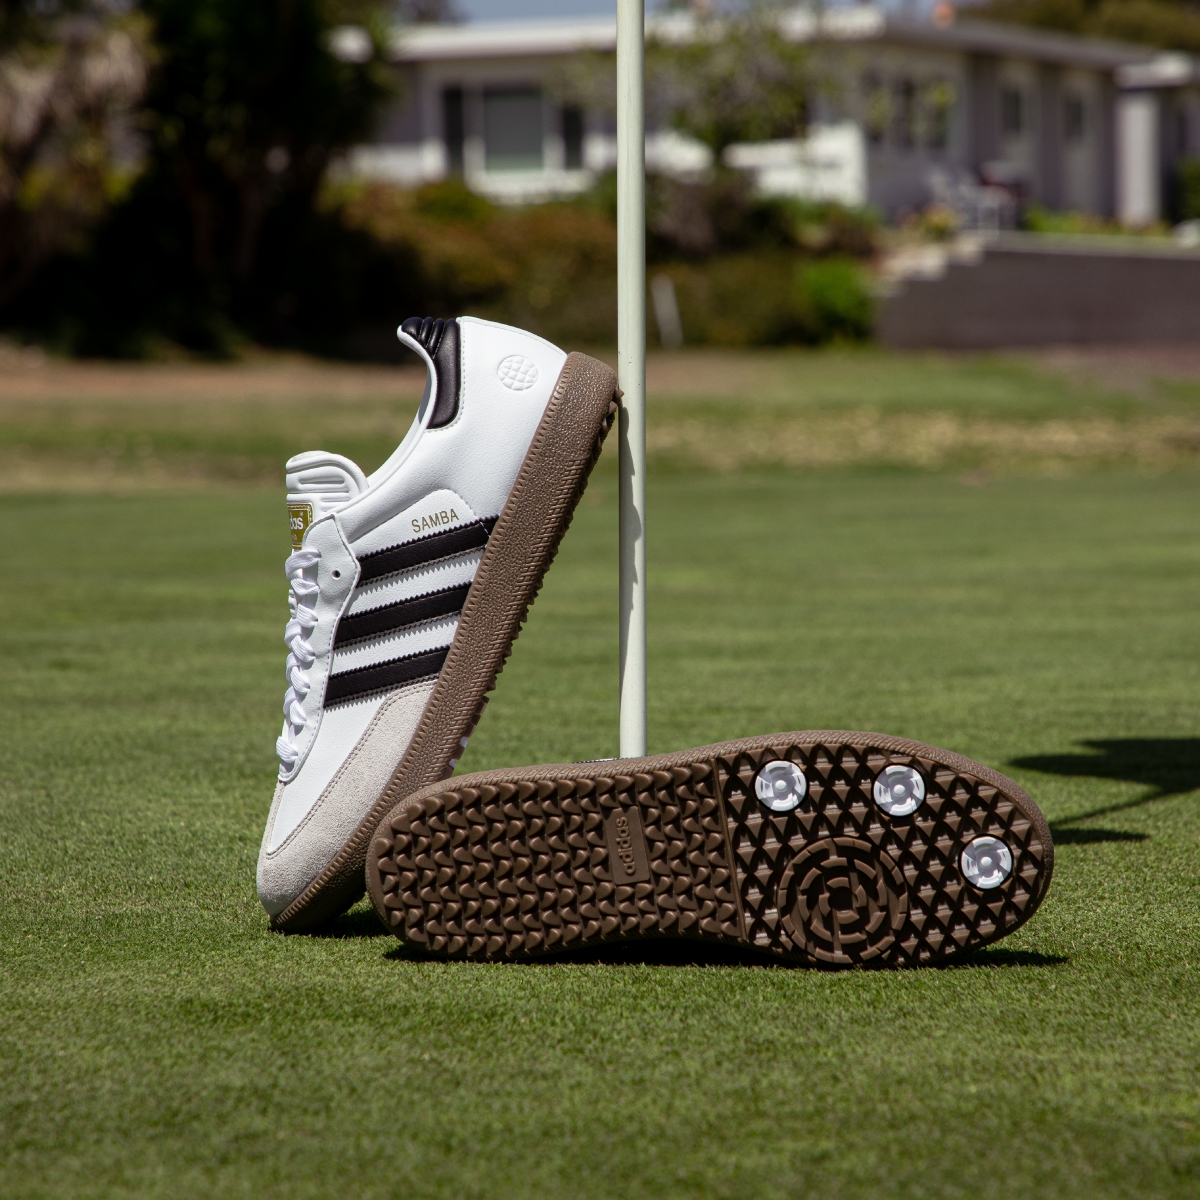 Samba OG Golf的中底額外增加EVA緩衝材料，大底則採用高耐磨adiWEAR無釘系統搭配前掌區域的爪釘設計，帶來出色抓地力與舒適.